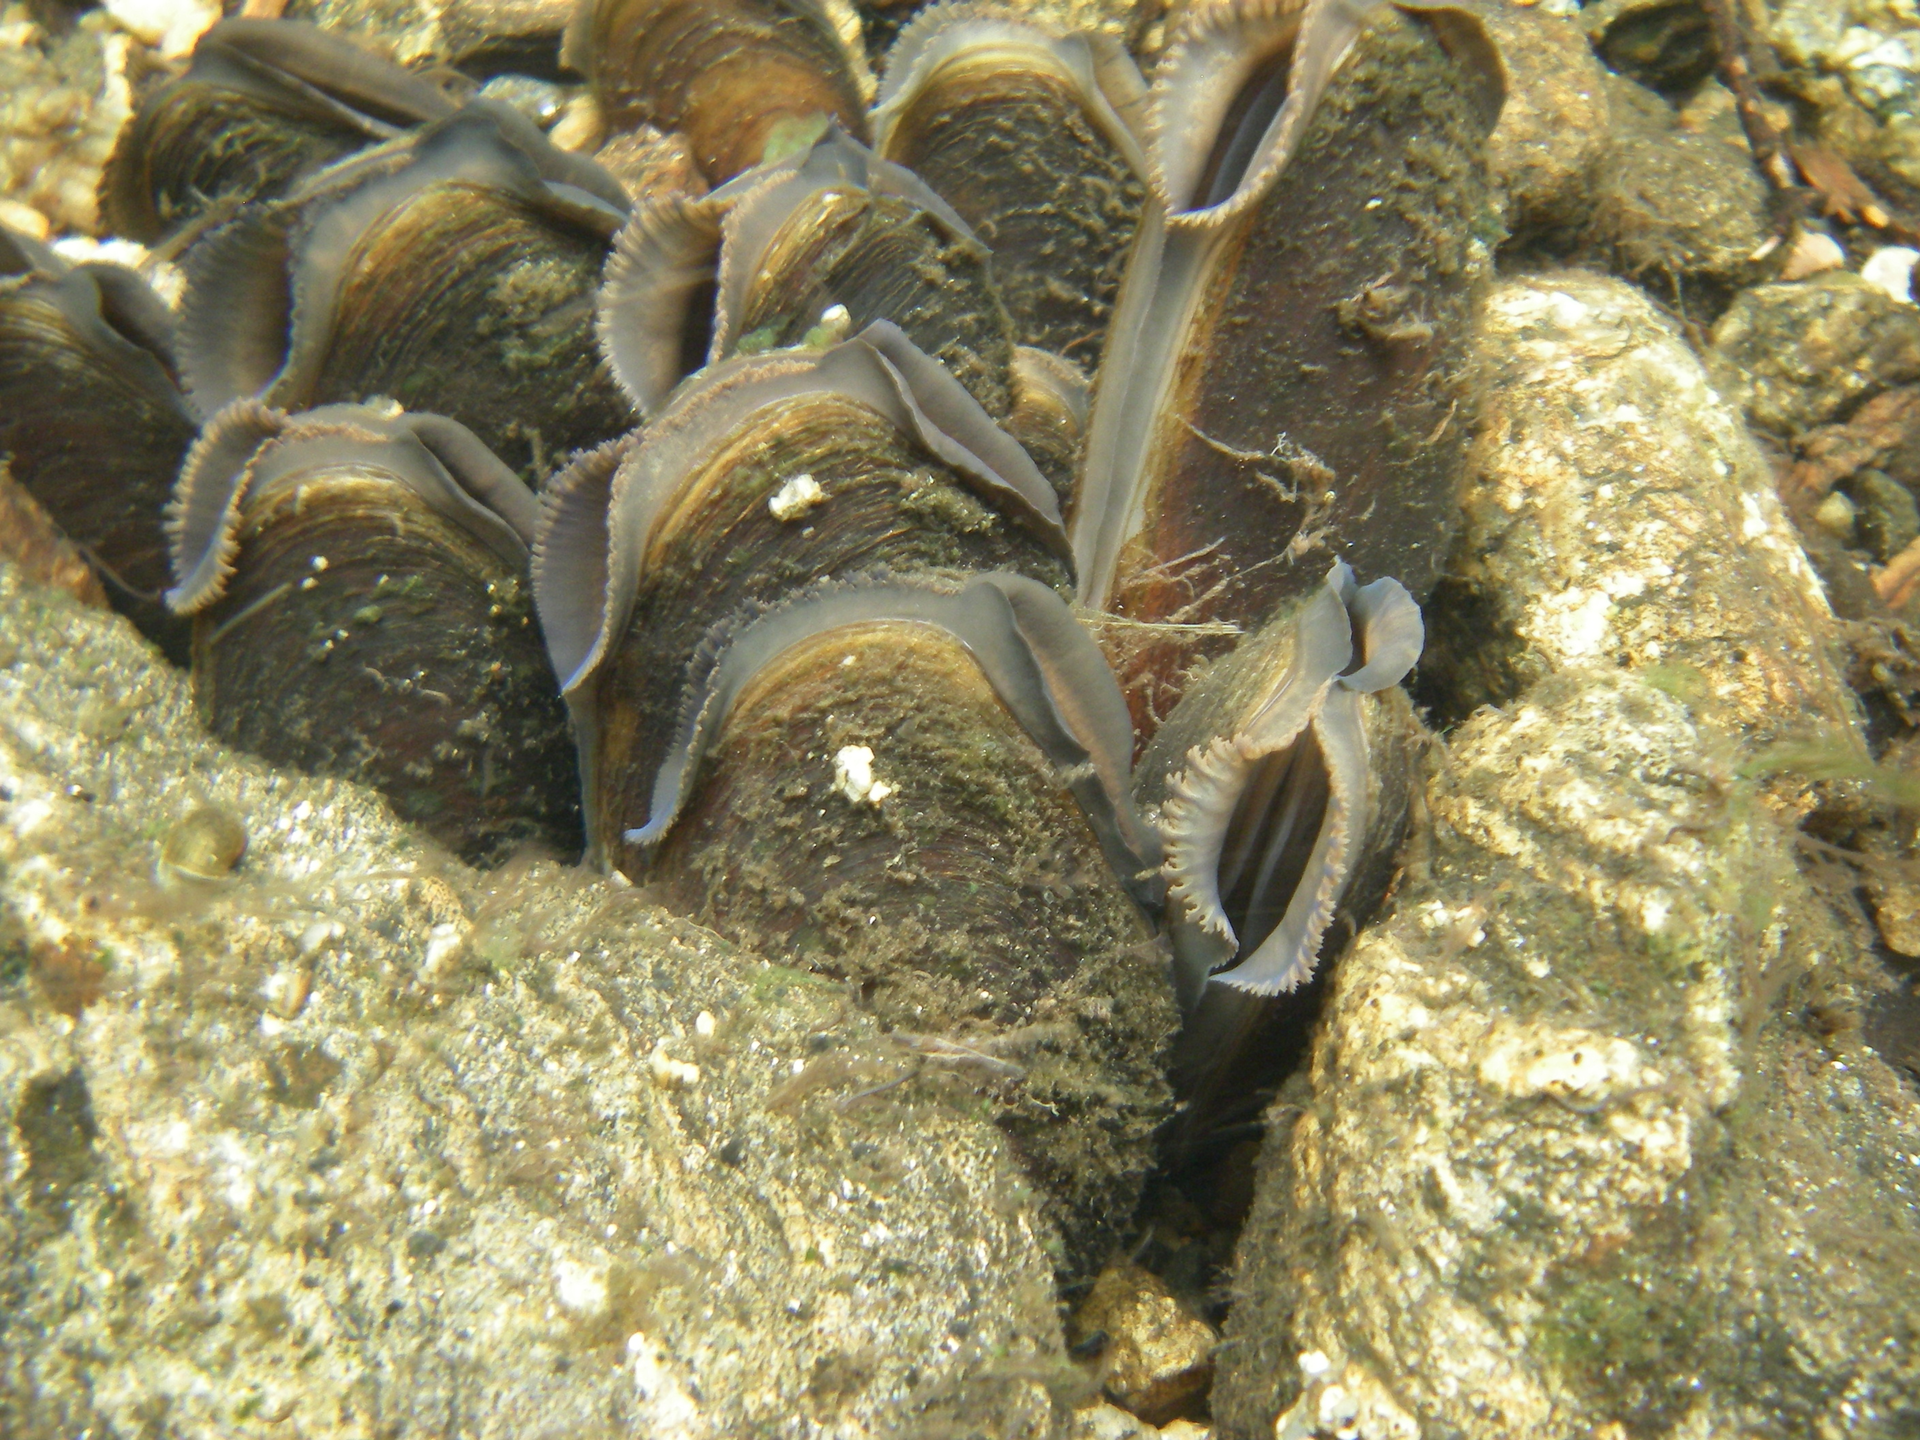 Fotografia przedstawia dziesięć ciemnych muszli małży między dwoma kamieniami na dnie strumienia. Małże to perłoródki rzeczne. Mają szary, częściowo otwarty płaszcz przy krawędzi muszli.